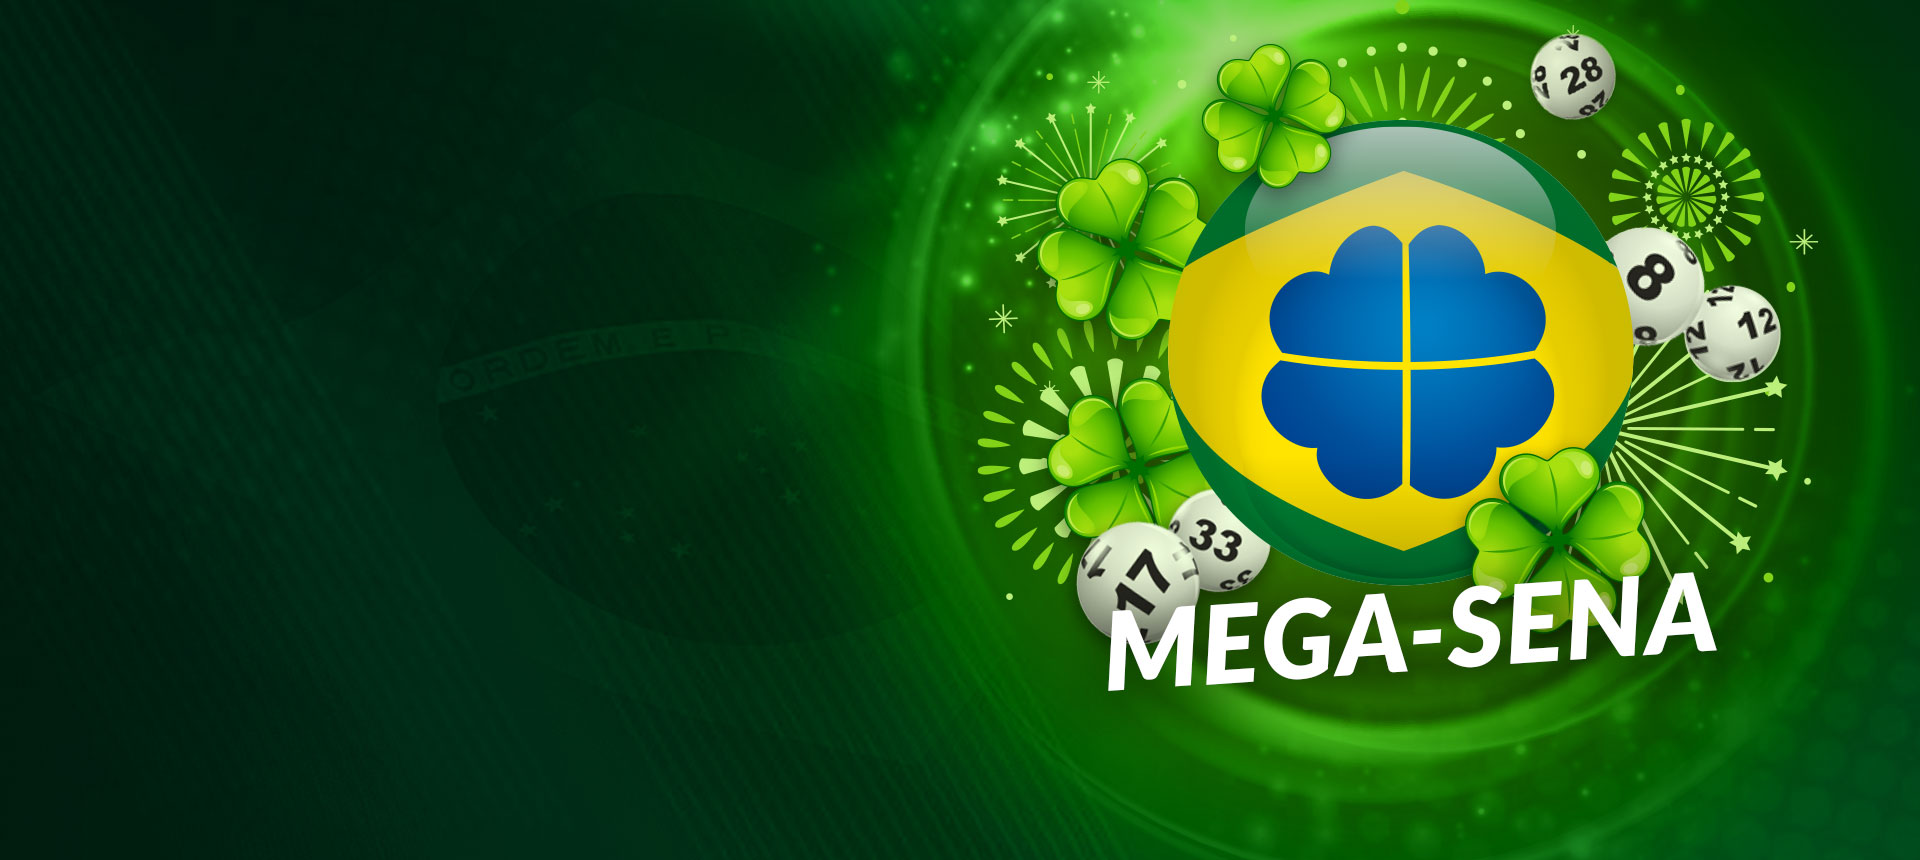 Jogue na Mega-Sena agora por R$80 Milhões!